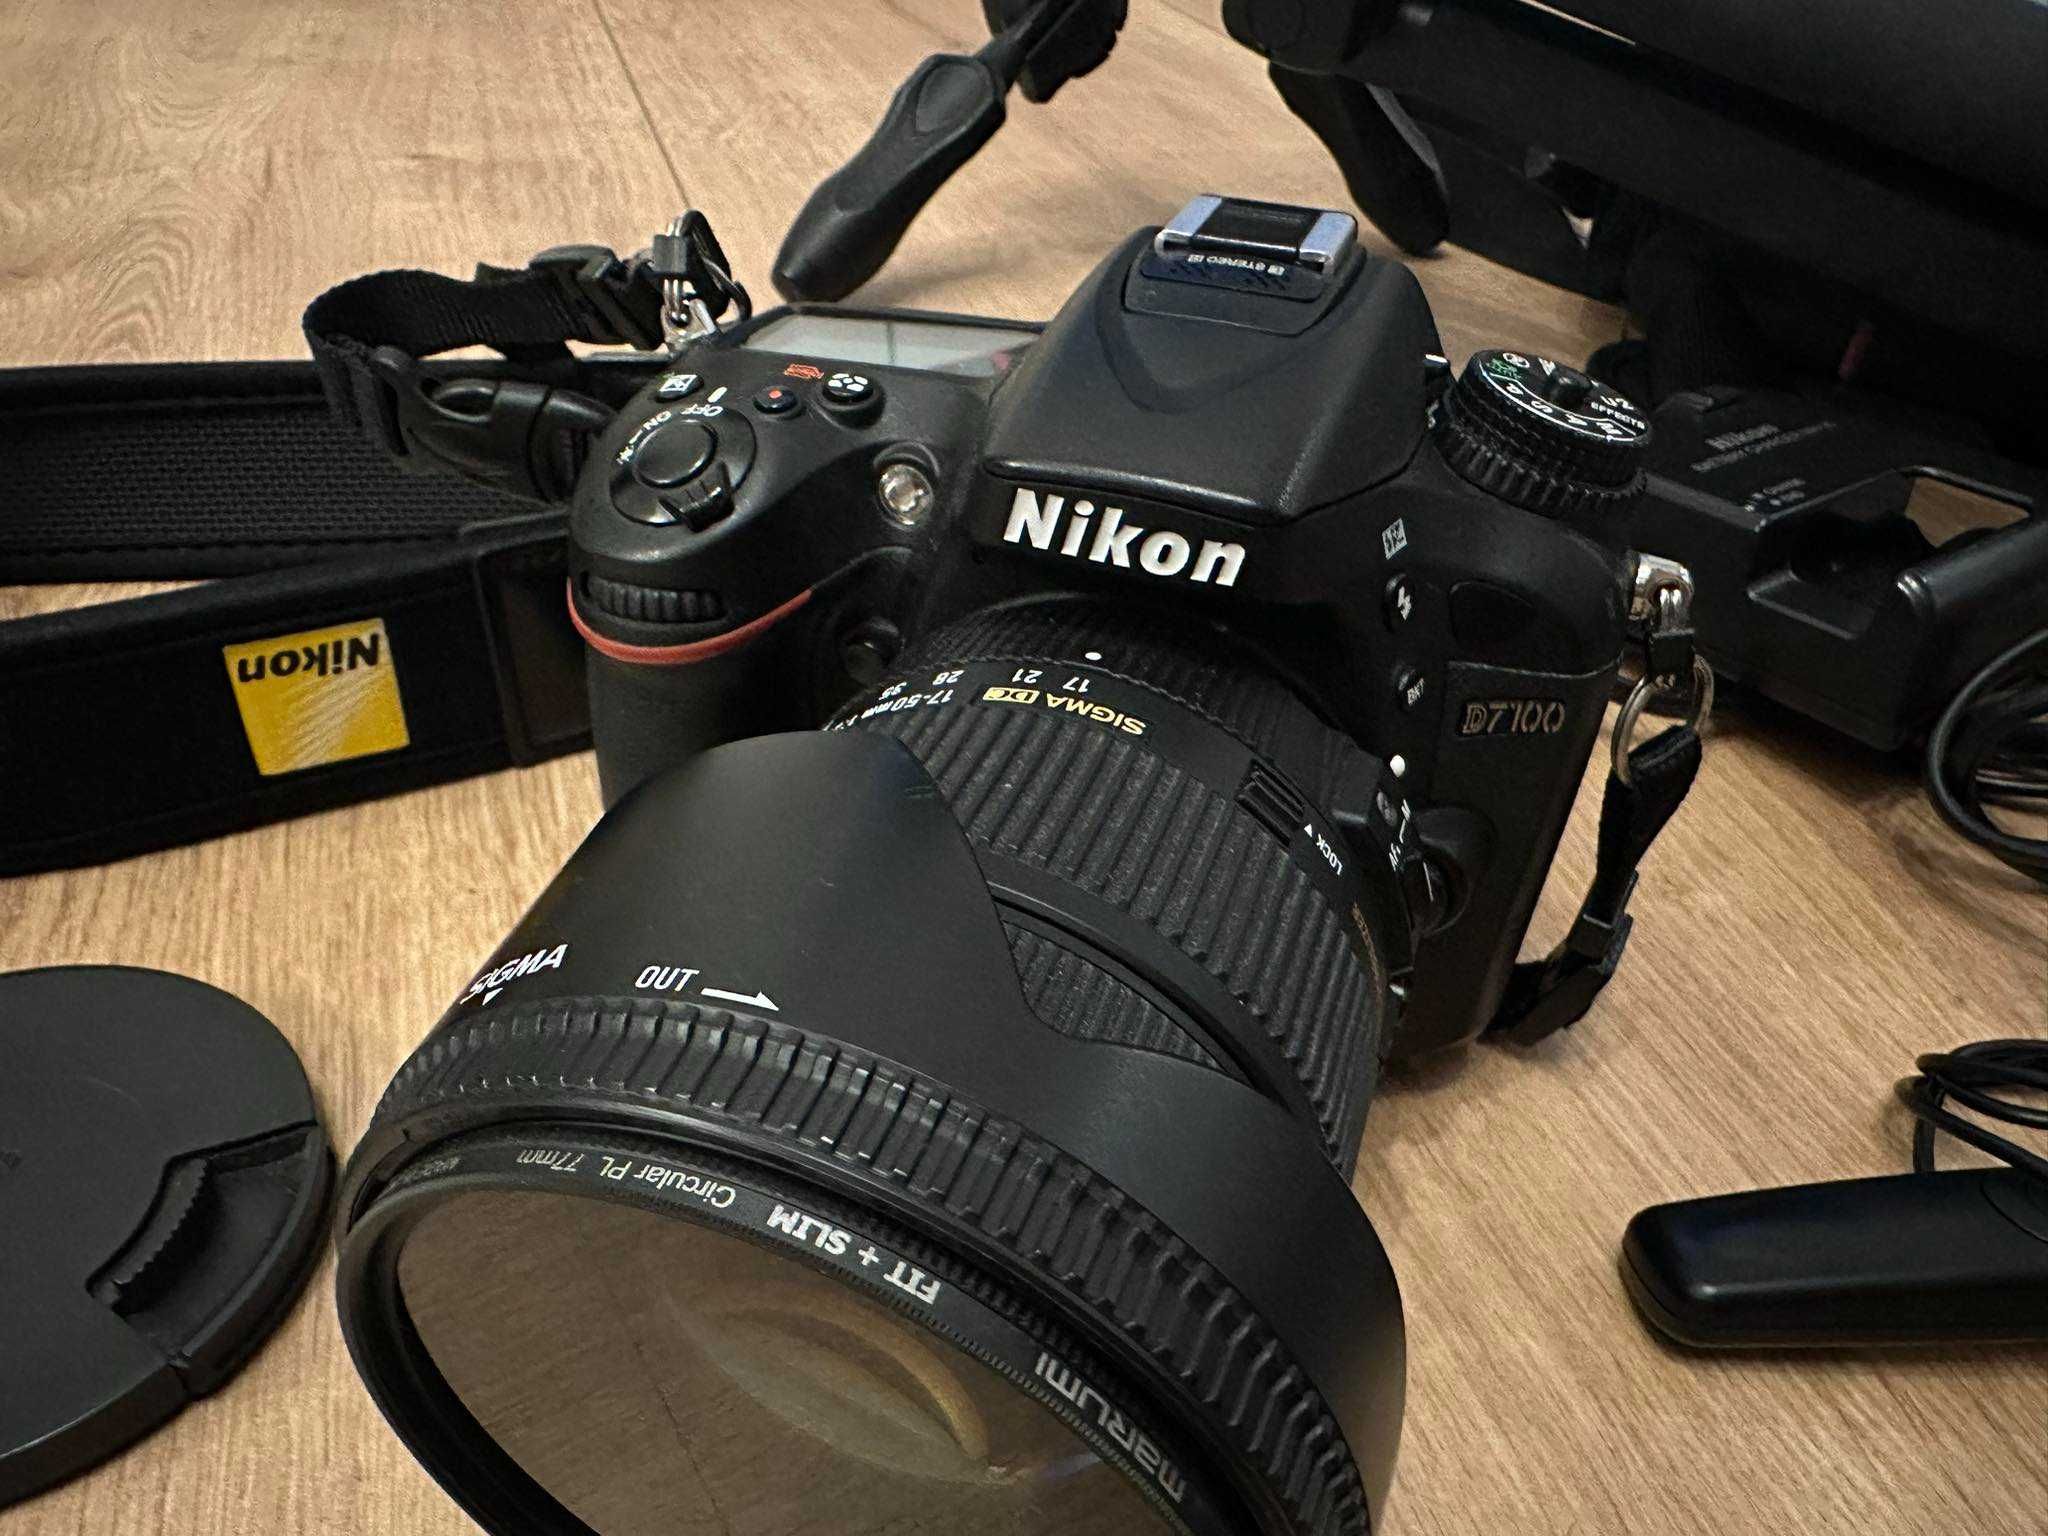 Nikon D7100 + Sigma 17-55 2.8 + filtr polaryzacyjny + statyw Manfrotto